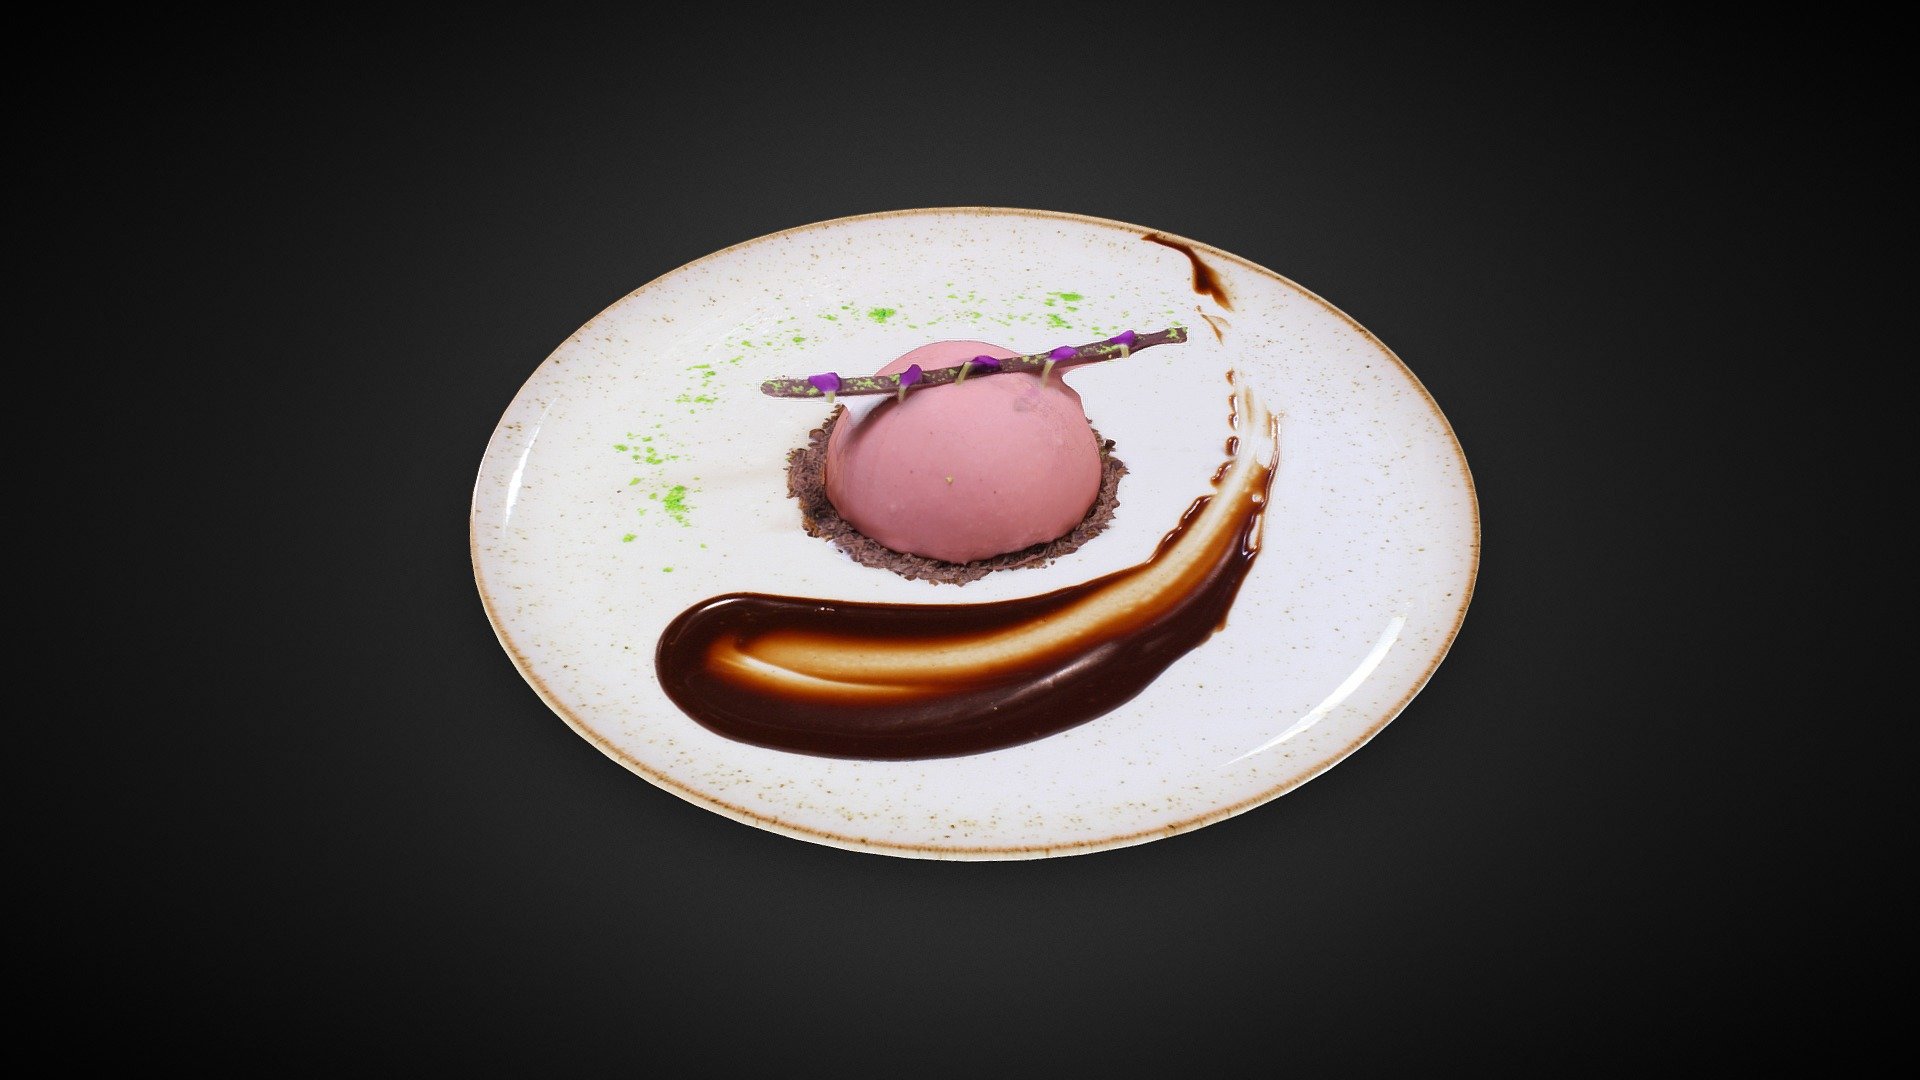 Bizcochuelo chocolate al 70%, gel de cereza y butterscoth - Mousse de Chocolate Glass - 3D model by Quimera Restaurante (@quimera) 3d model